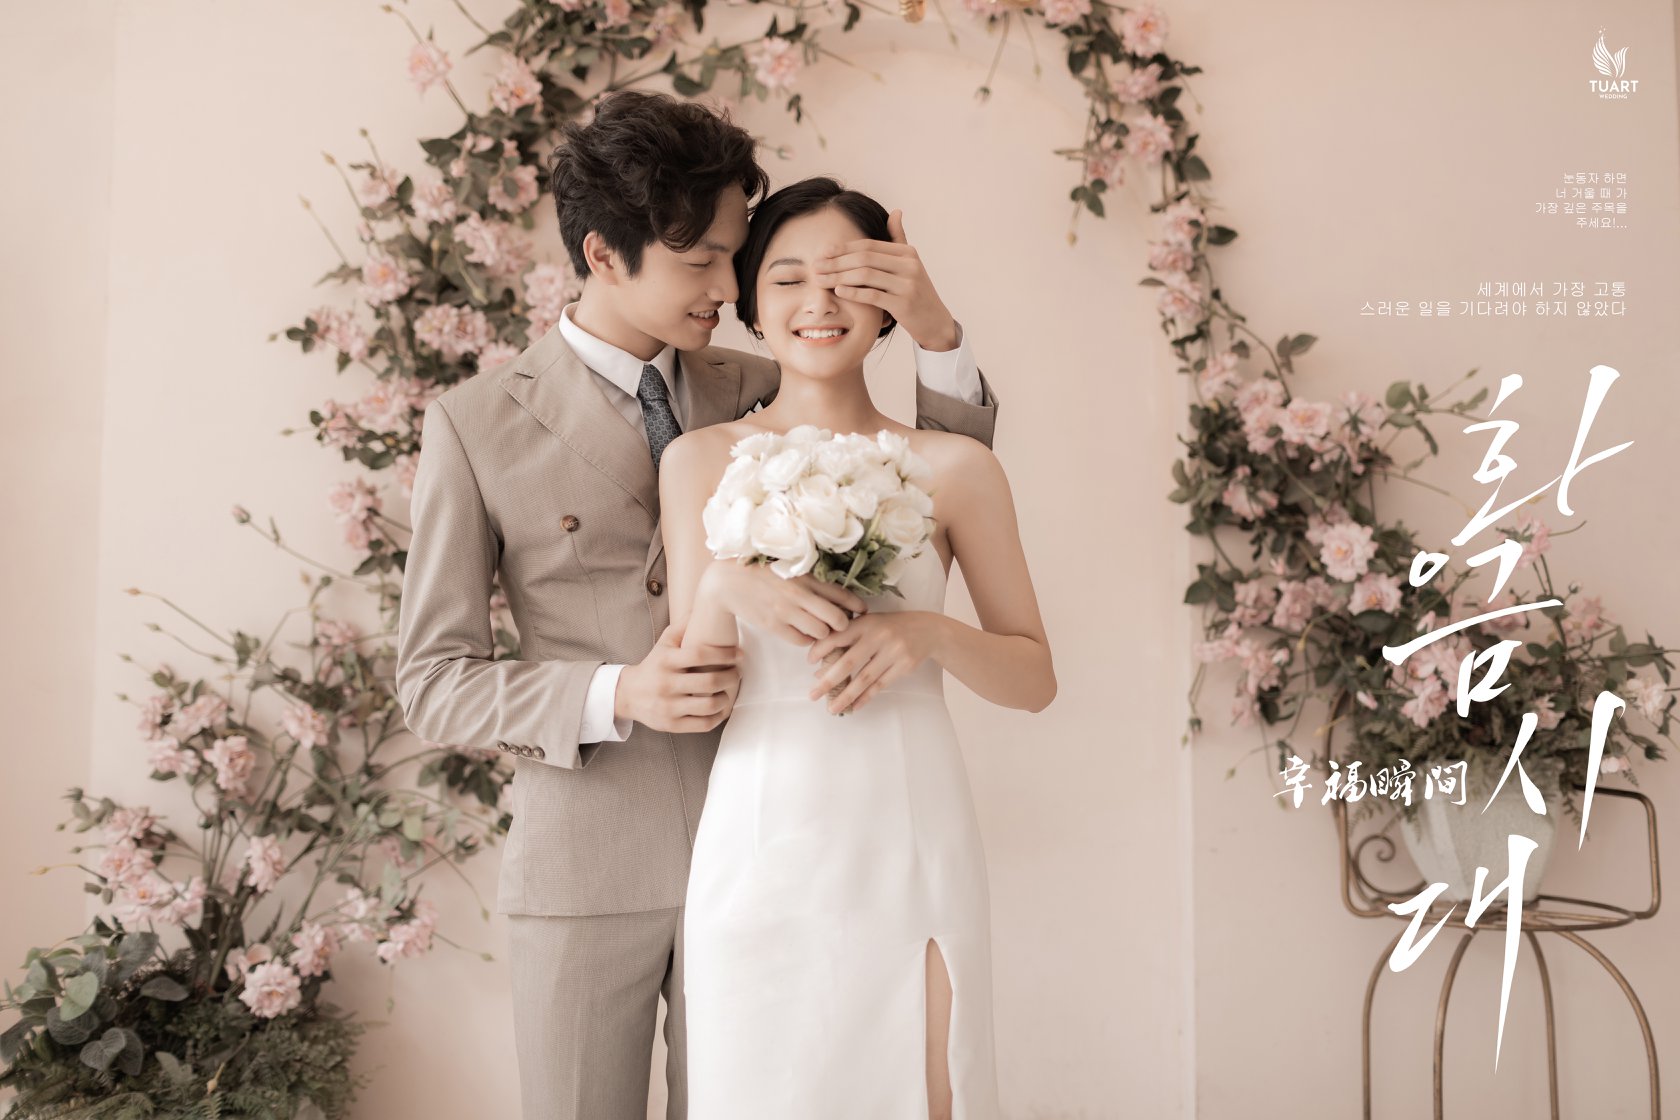 Những bức ảnh cưới Hàn Quốc đẹp như mơ sẽ khiến bạn khao khát kết hôn ngay lập tức. Cùng chiêm ngưỡng những khoảnh khắc lãng mạn và đầy tình cảm trong ngày trọng đại của đôi uyên ương này.